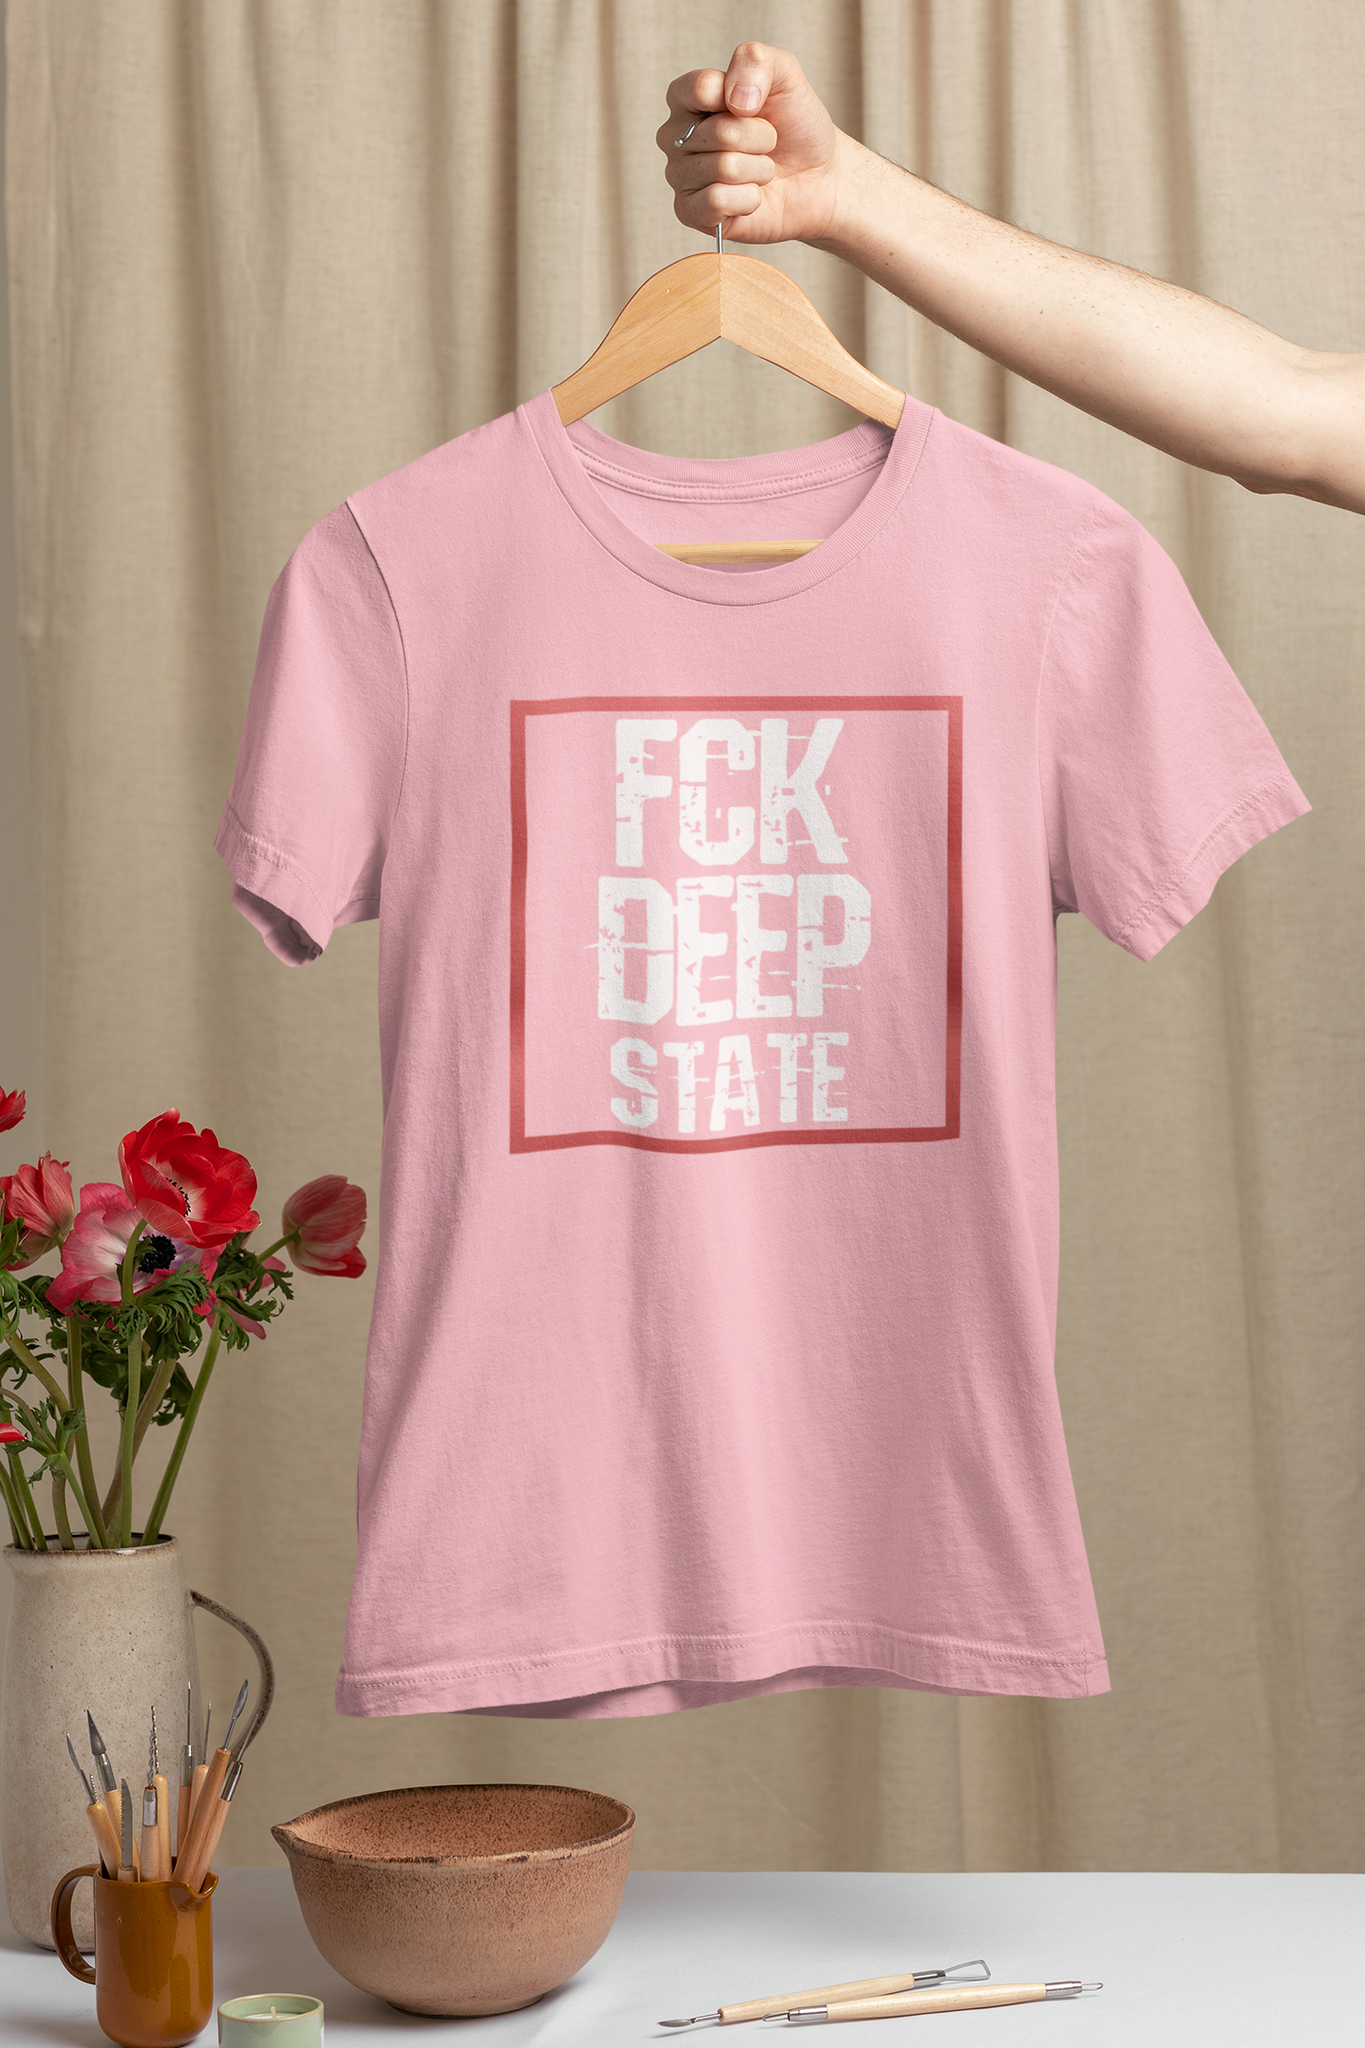 FCK The Deep State. T-Shirt i många färger att välja mellan.